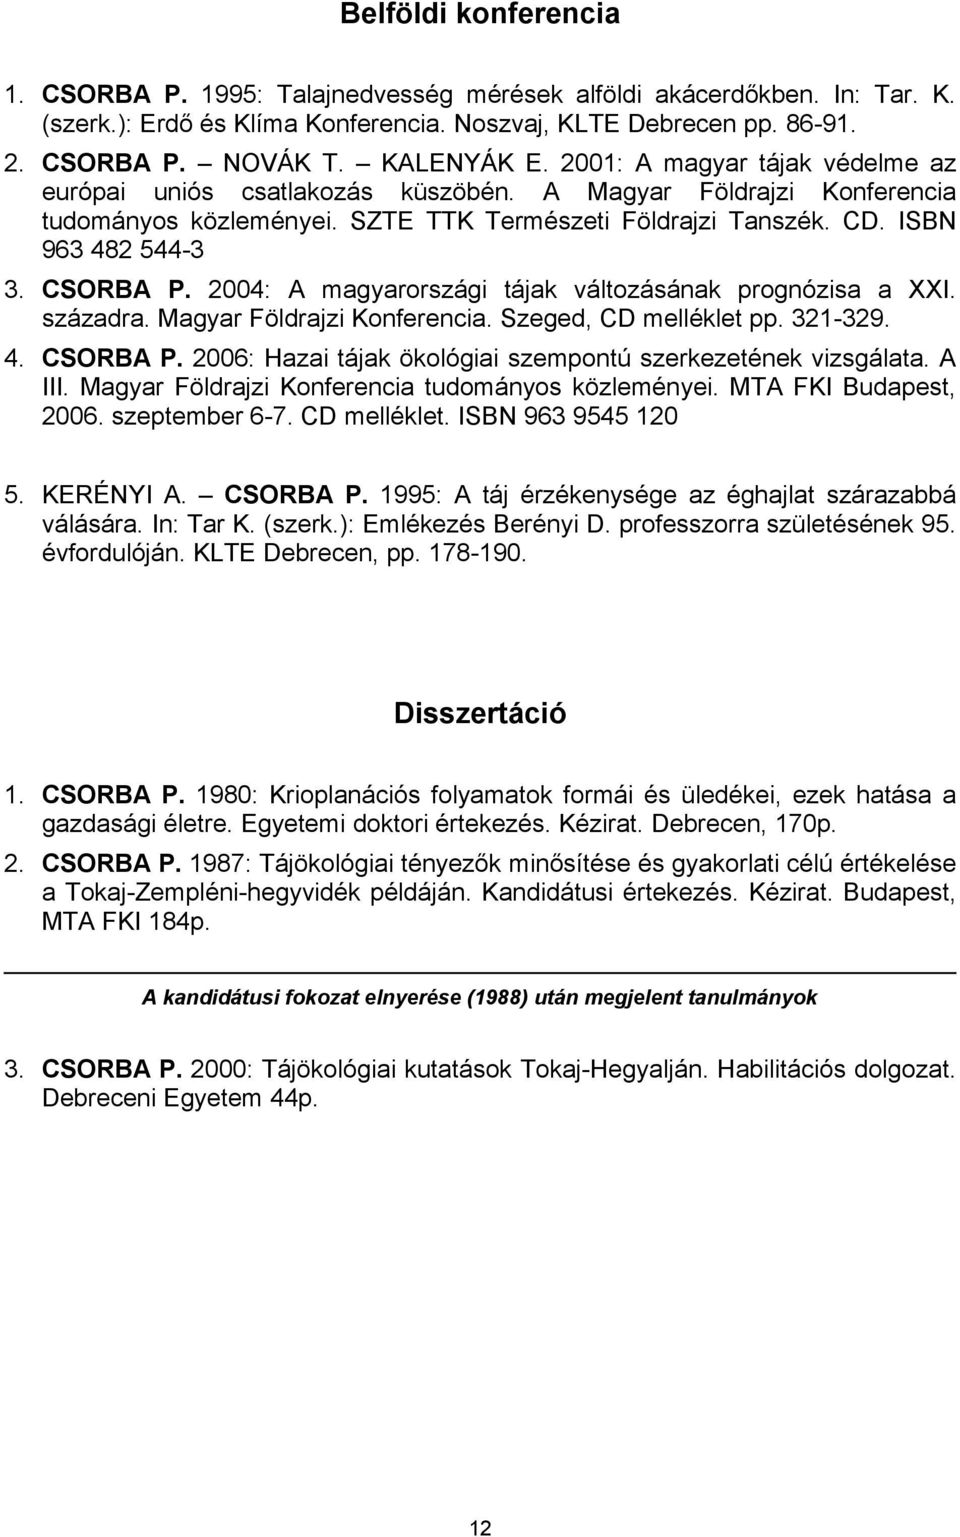 CSORBA P. 2004: A magyarországi tájak változásának prognózisa a XXI. századra. Magyar Földrajzi Konferencia. Szeged, CD melléklet pp. 321-329. 4. CSORBA P.